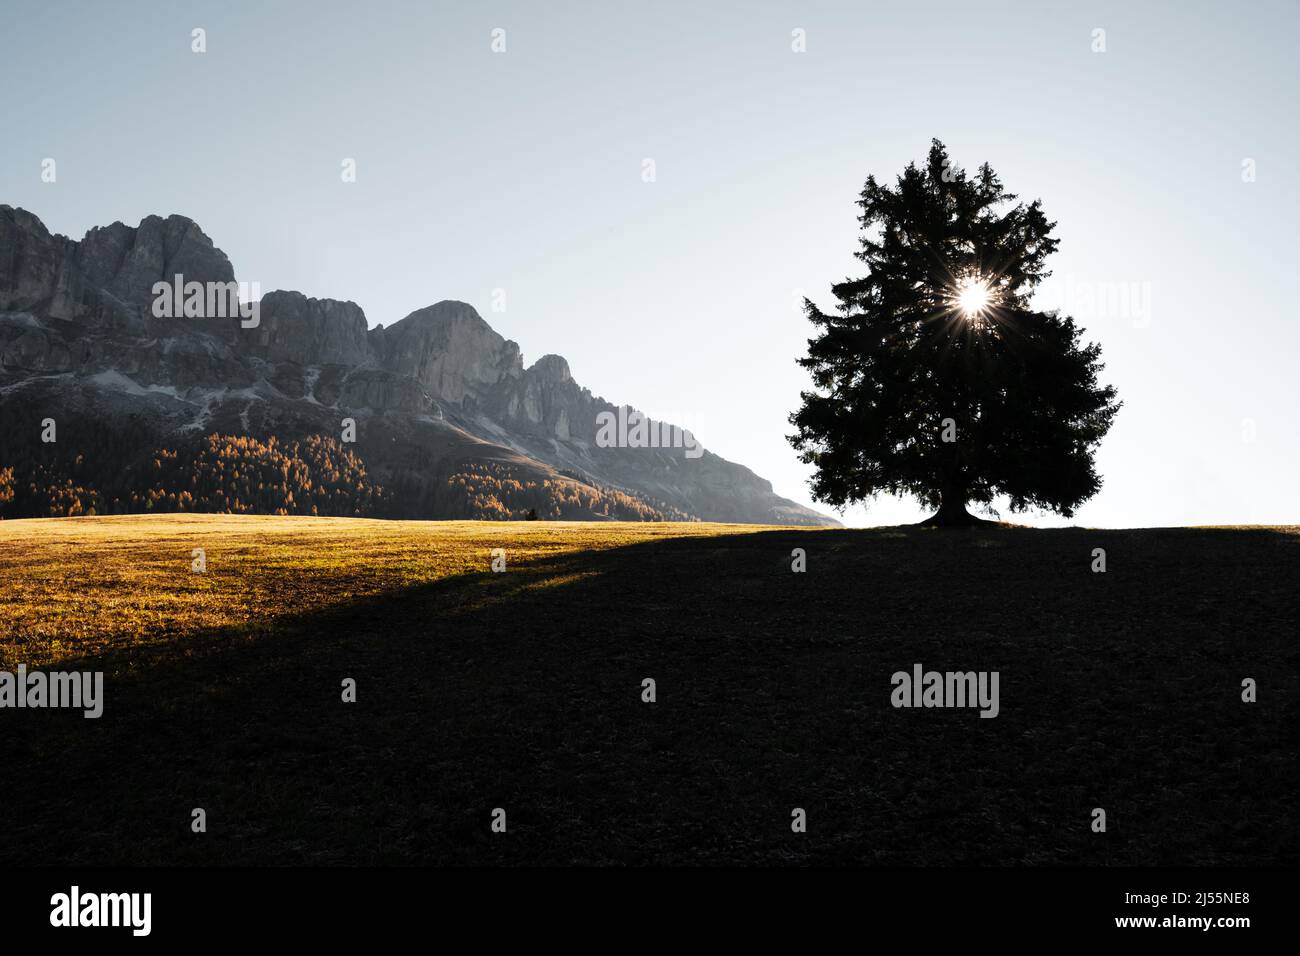 Schöne ländliche italienische Landschaft mit Herbstwiese, Baumsilhouette mit Sonne und Gipfeln hoher Berge im Hintergrund. Nigerpass (Passo Nigra), Dolomiten, Dolomiten, Italien Stockfoto